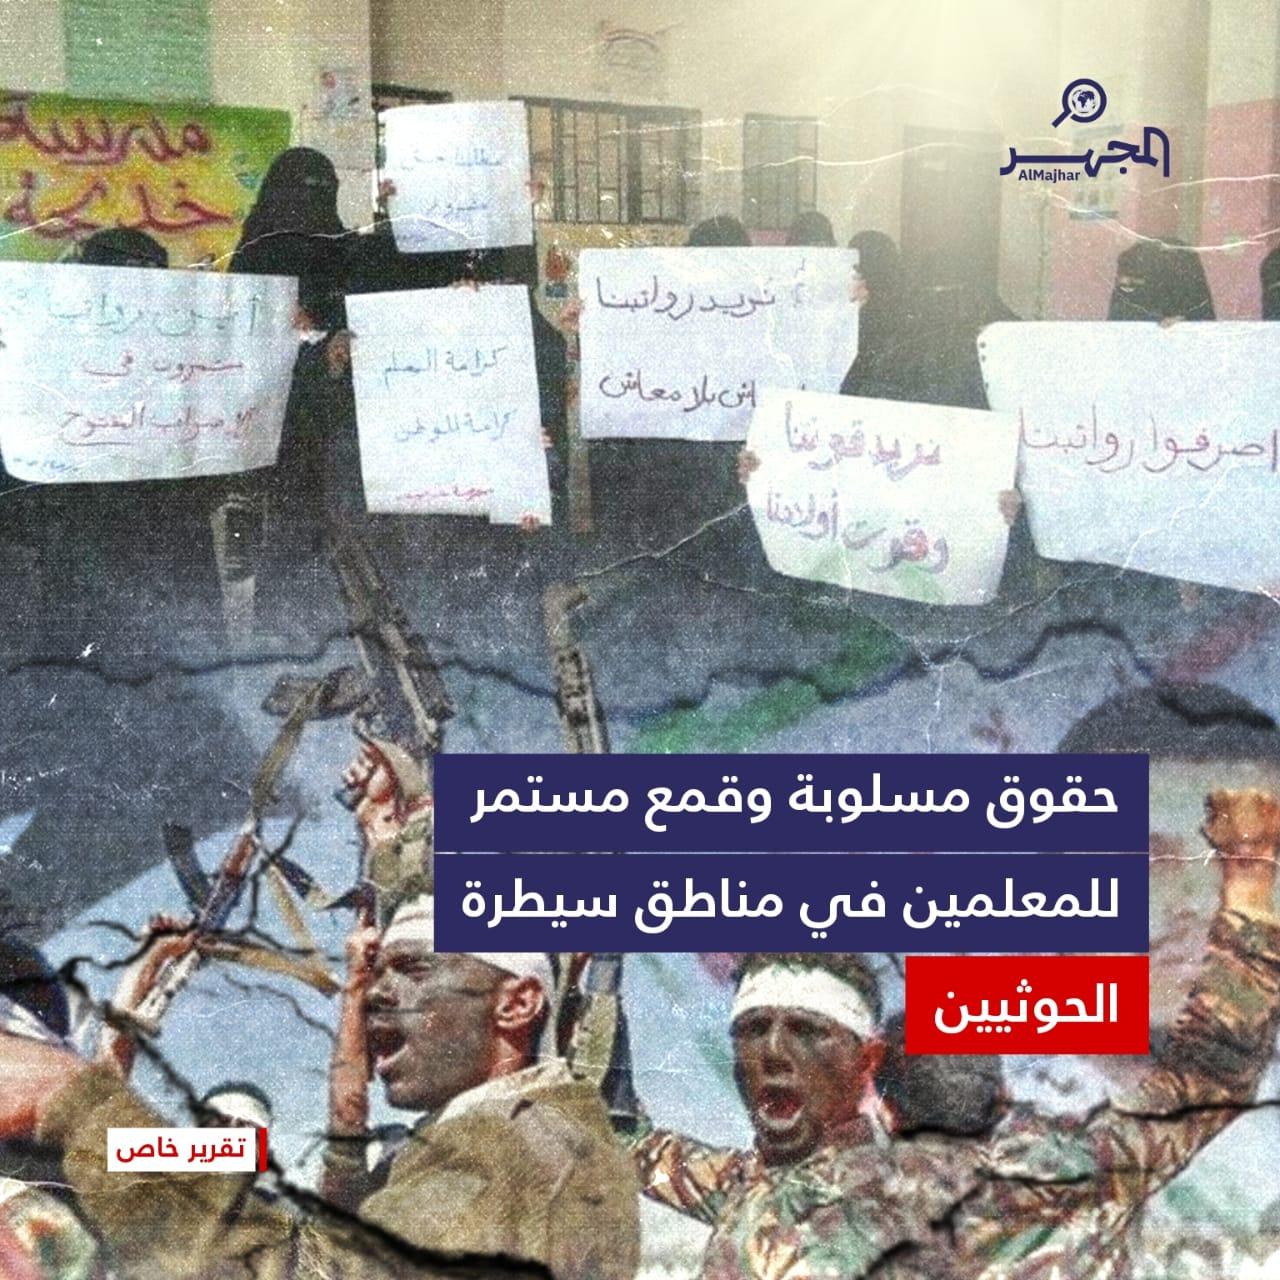 حقوق مسلوبة وقمع مستمر للمعلمين في مناطق سيطرة الحوثيين (تقرير خاص)